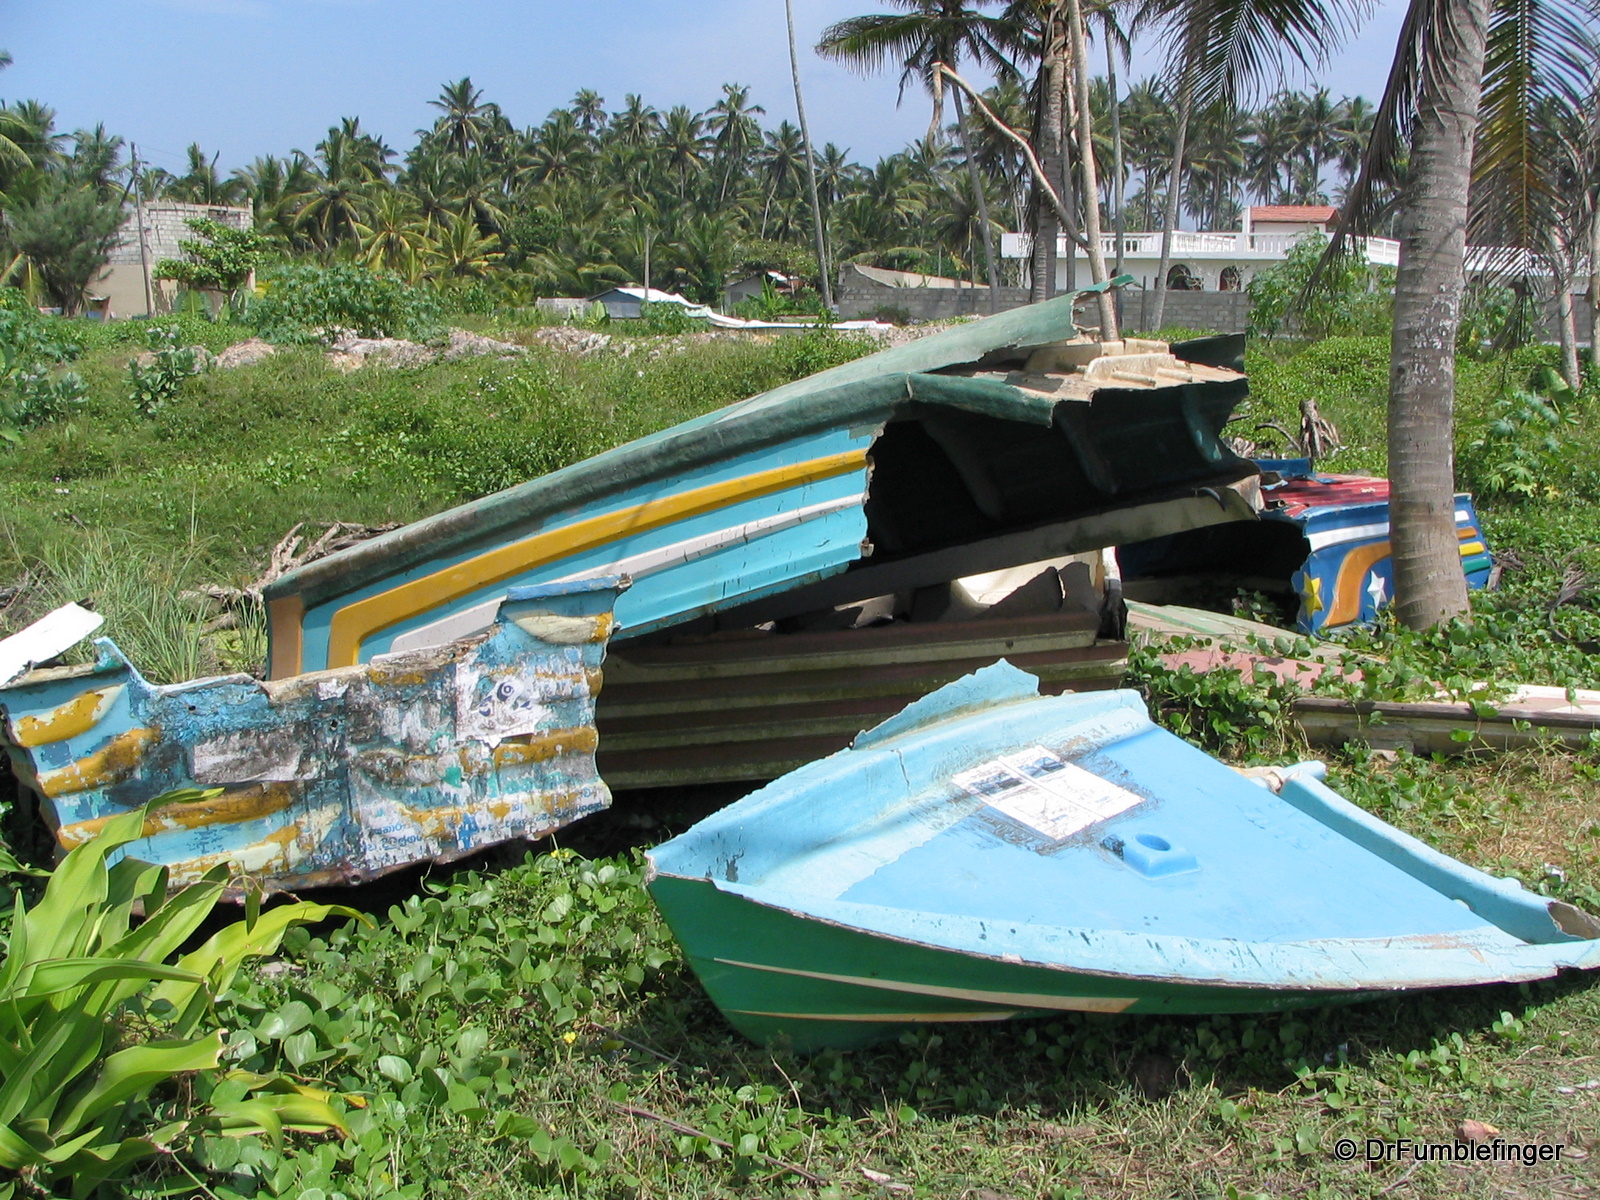 Destroyed boats, tsunami damage